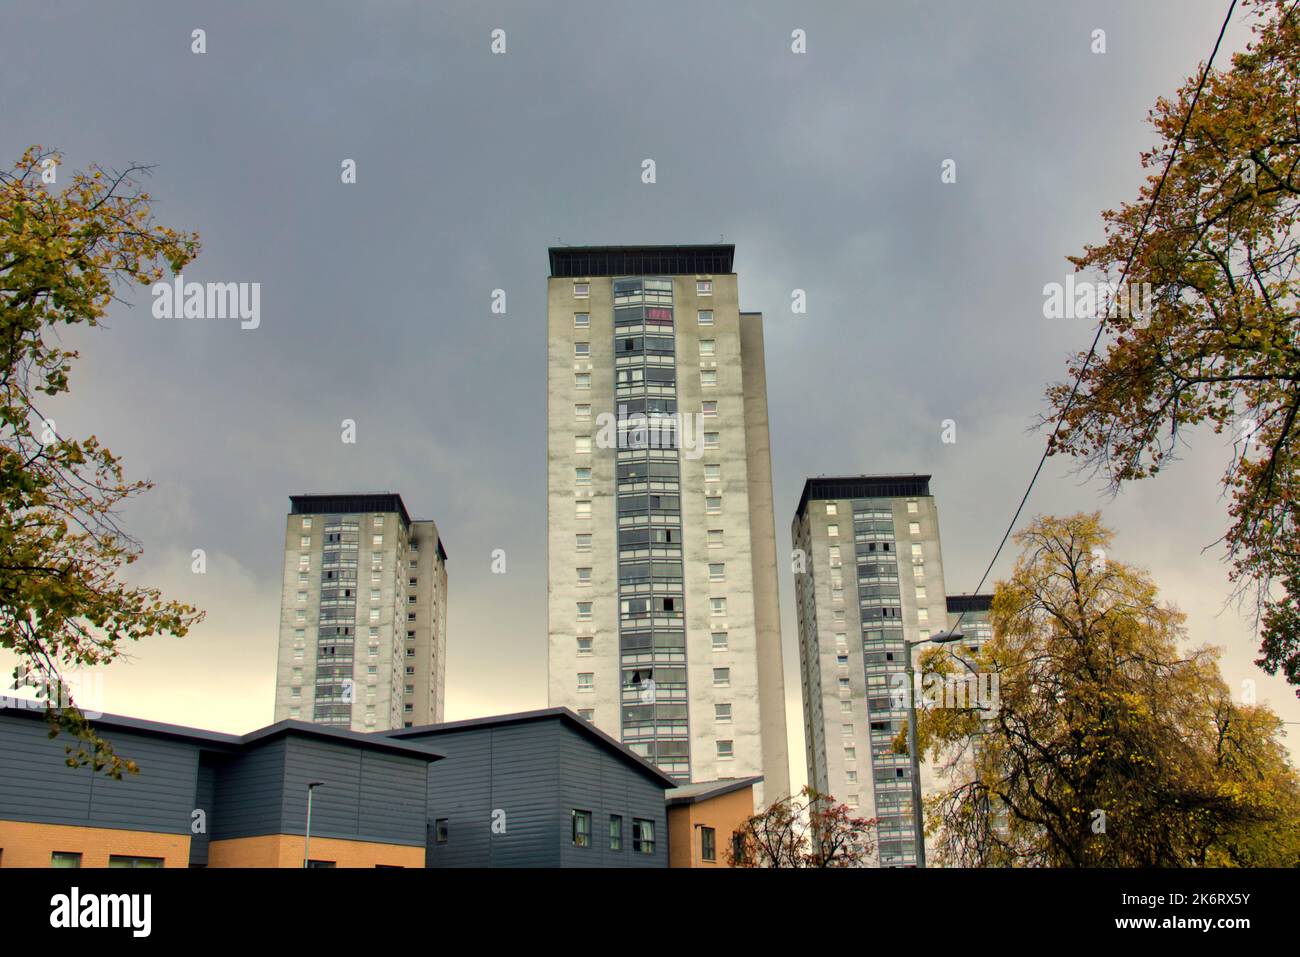 Lincoln avenue council che ospita architettura brutalista moderne torri in cemento Glasgow, Scozia, Regno Unito Foto Stock